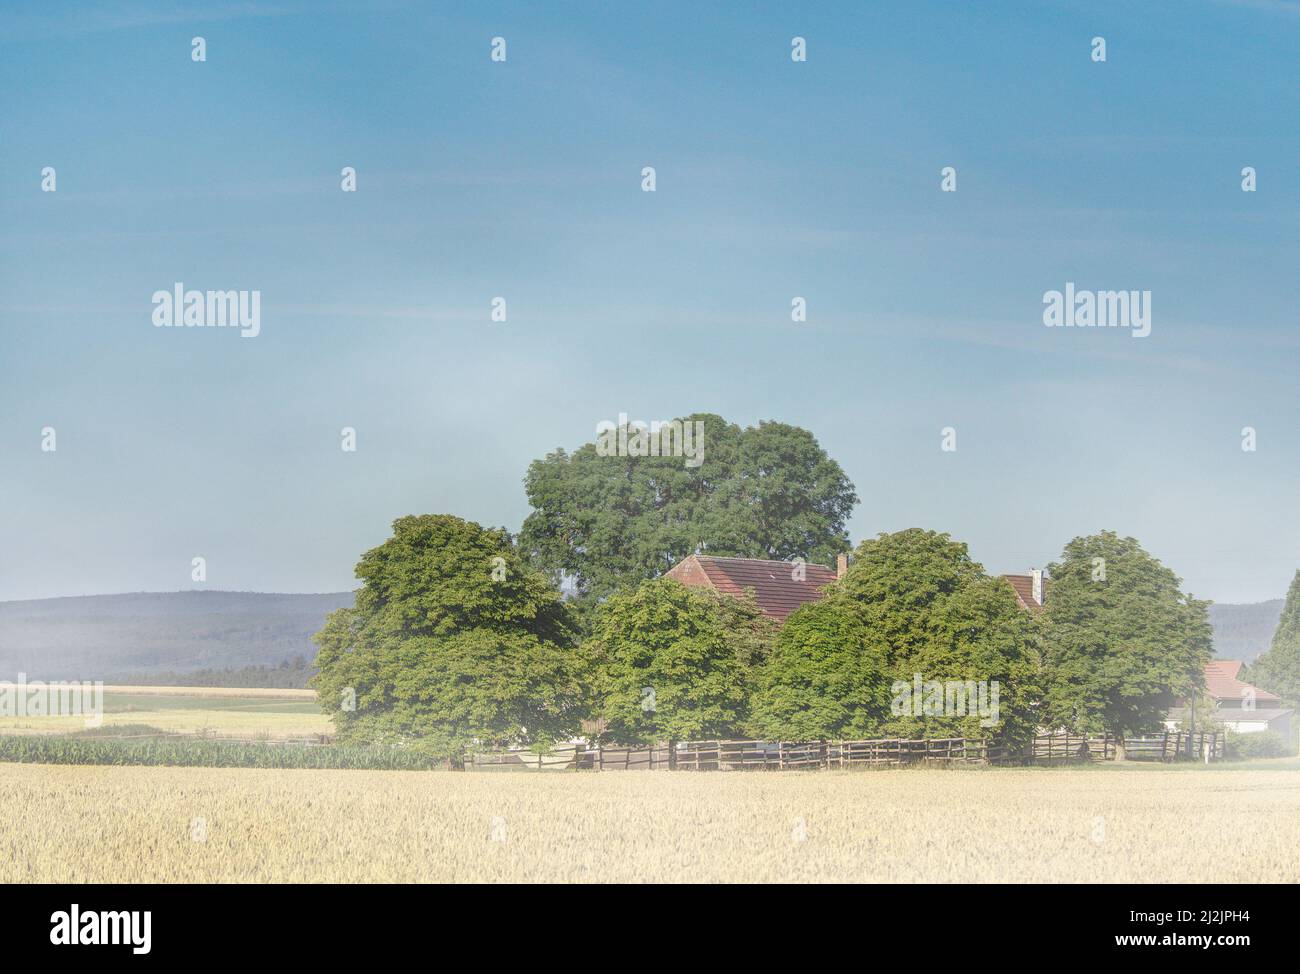 An einem Sommermorgen auf dem Land steigt leichter Dunst von den Getreidefeldern auf und bedeckt den Hof in seinem Schleier. Stockfoto